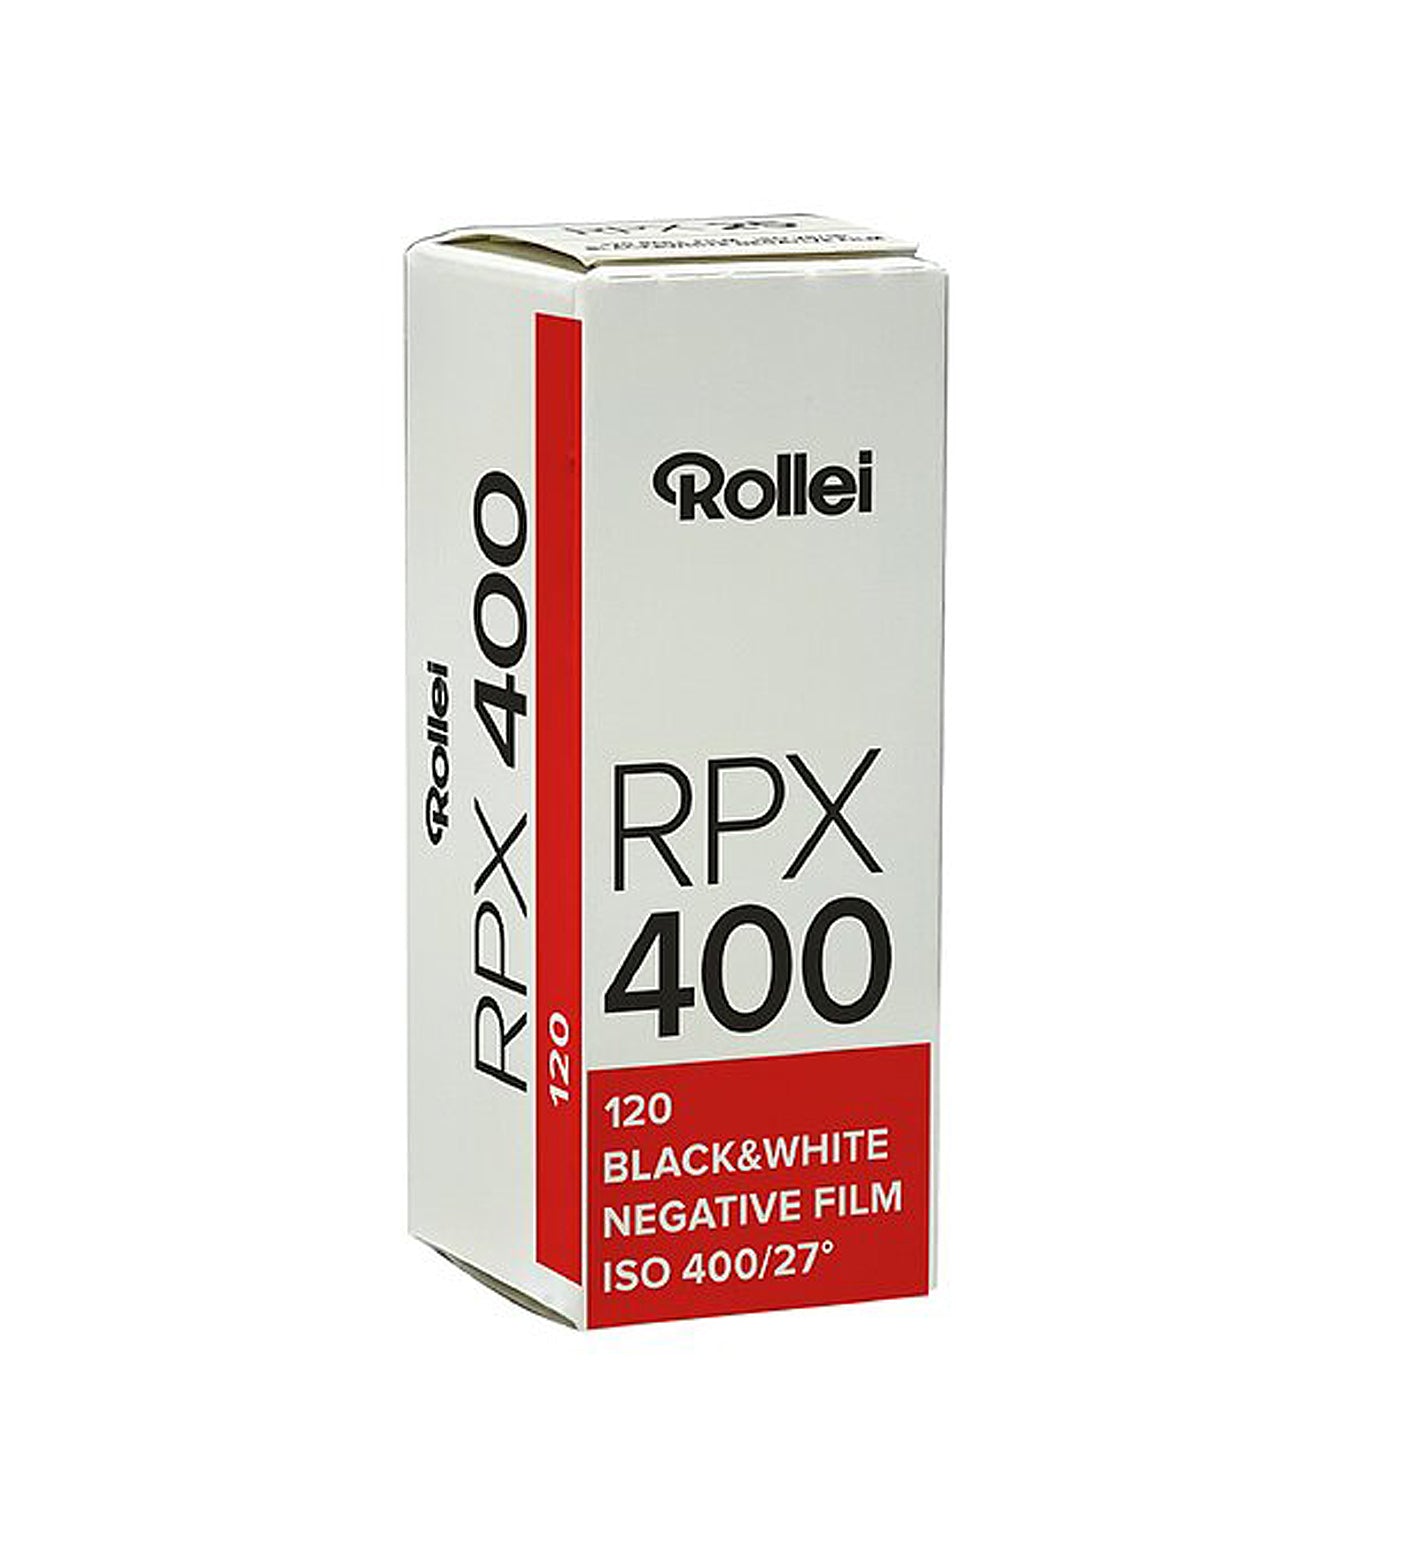 Rollei RPX 400 120 Film (£8.50 incl VAT)